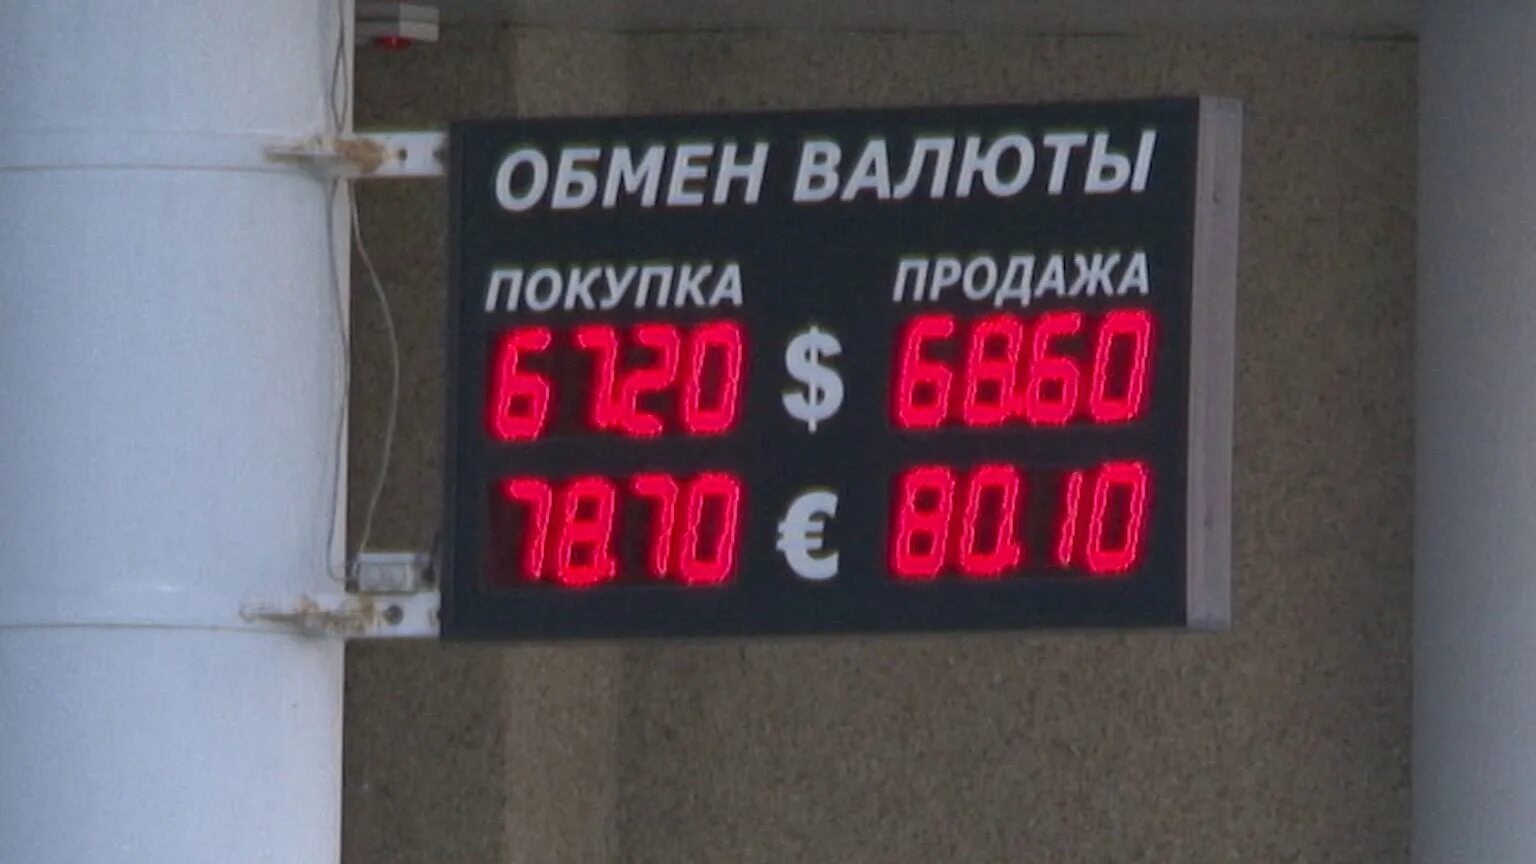 Обмен валют белгород. Обмен валют реклама окна. Валюта для лагеря.